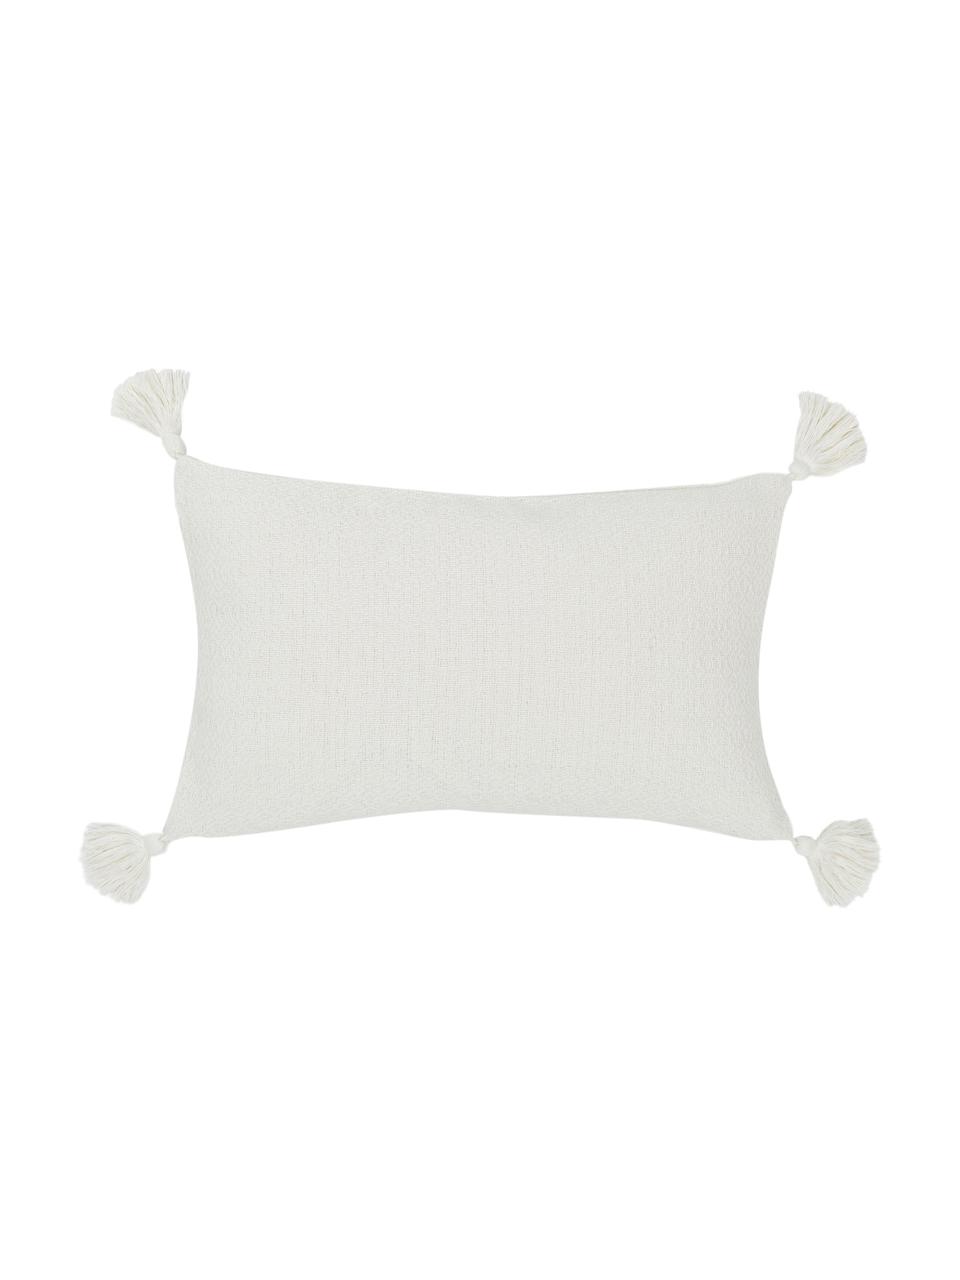 Housse de coussin rectangulaire blanche Lori, 100 % coton, Blanc, larg. 30 x long. 50 cm